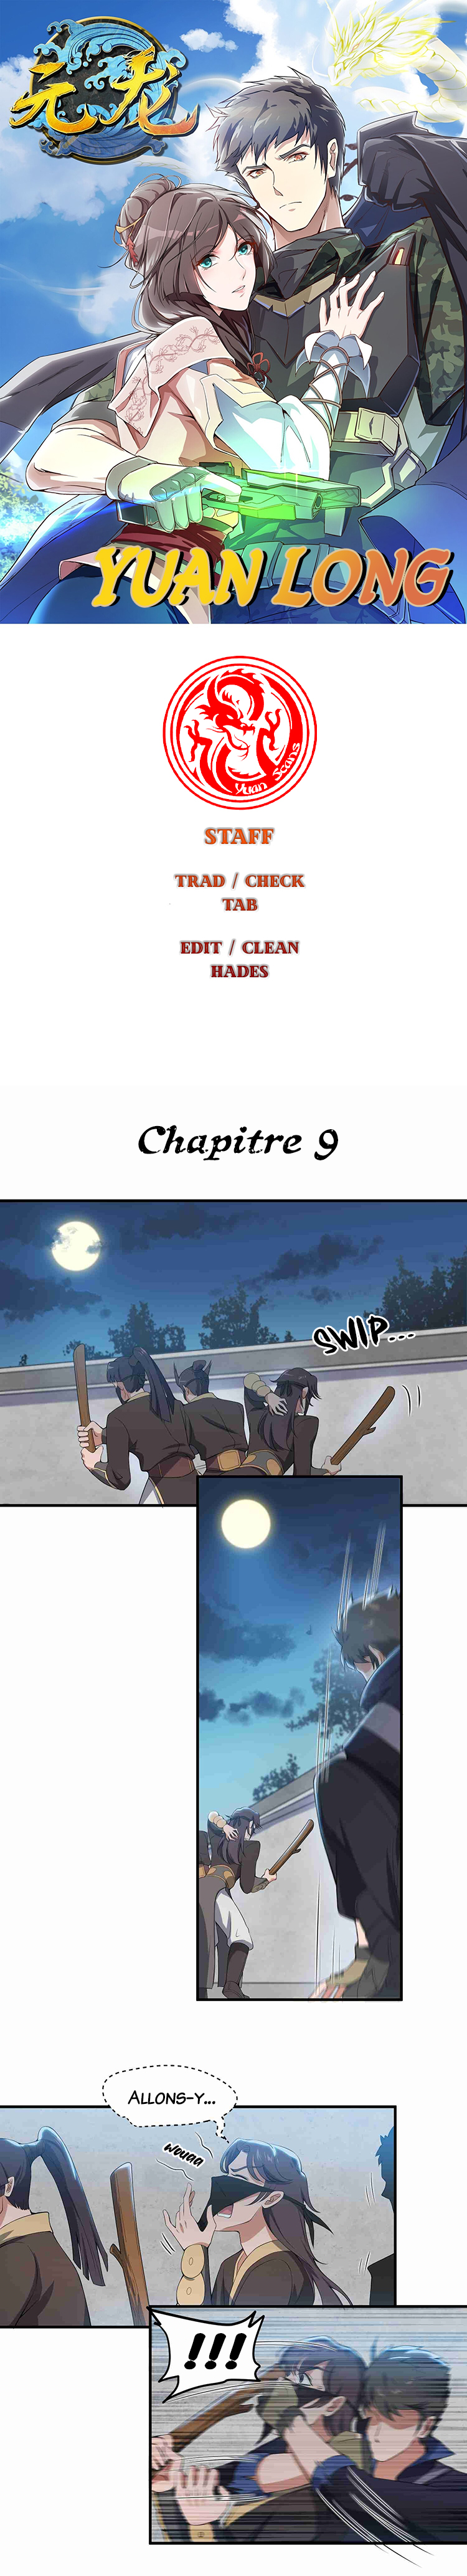 Yuanlong: Chapter 9 - Page 1